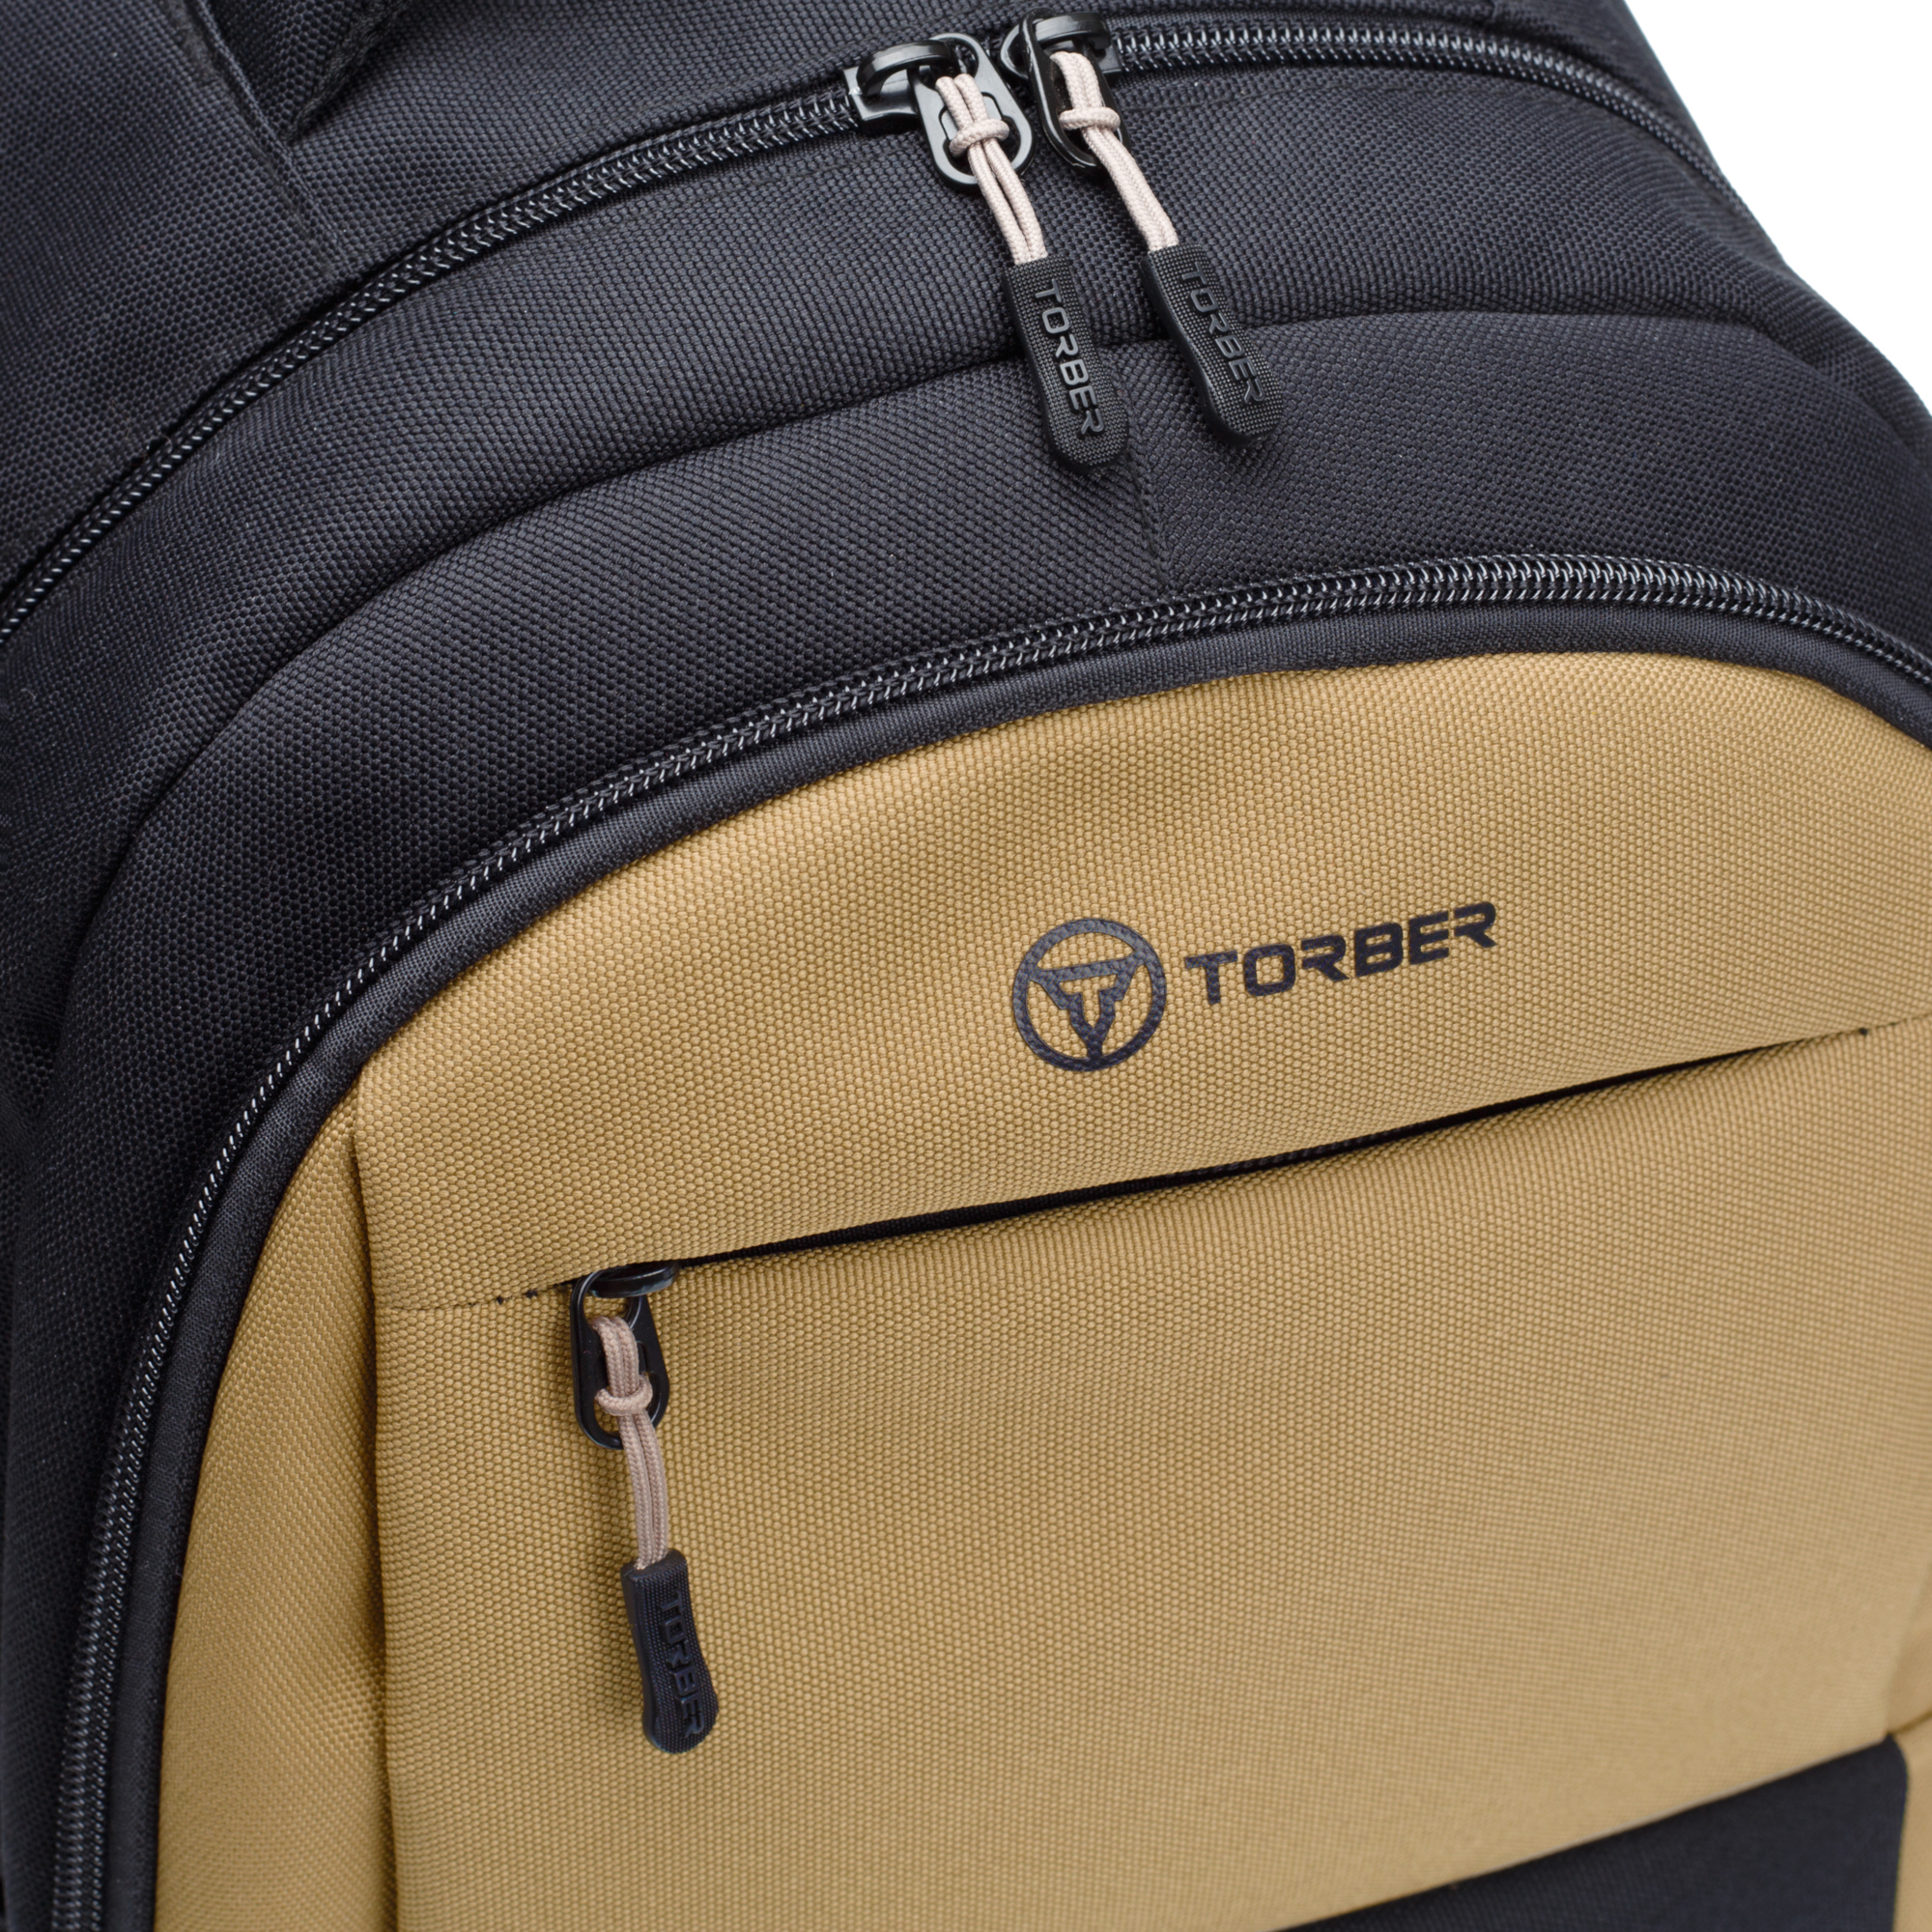 Рюкзак TORBER CLASS X черно-бежевый и мешок для сменной обуви в подарок - фото 8